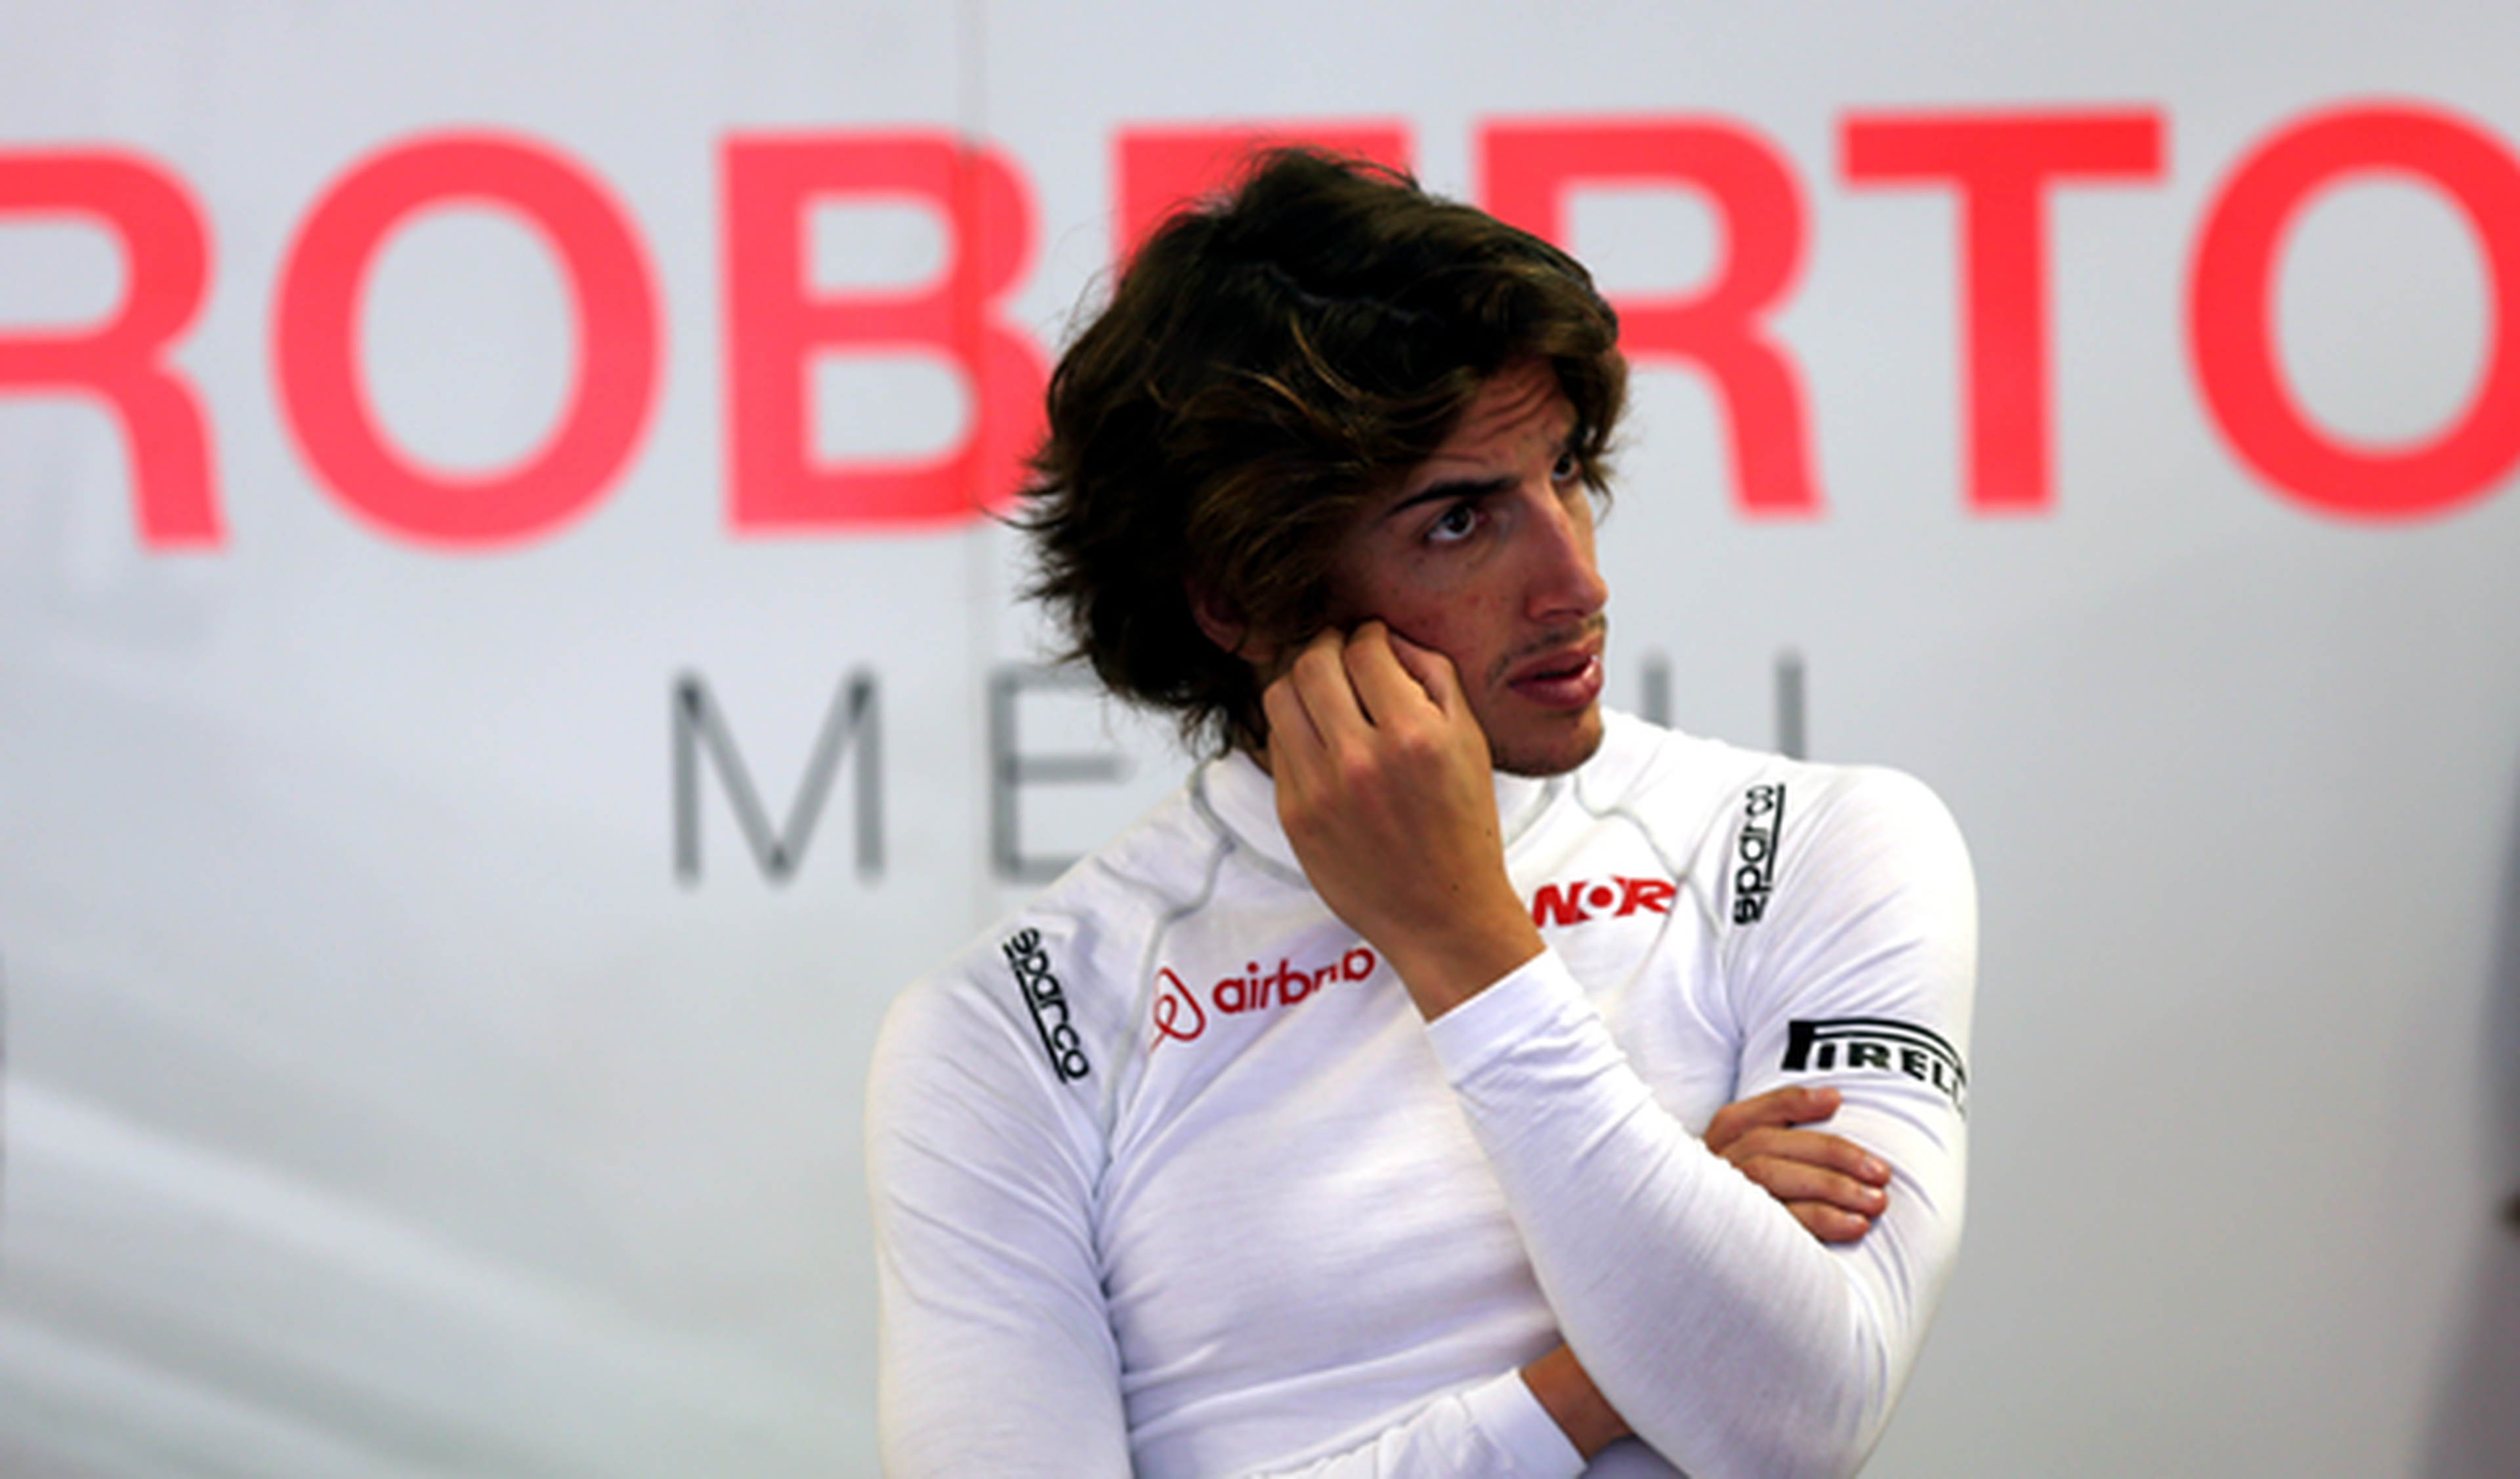 Roberto Merhi aceptaría ser tercer piloto de F1 en 2016